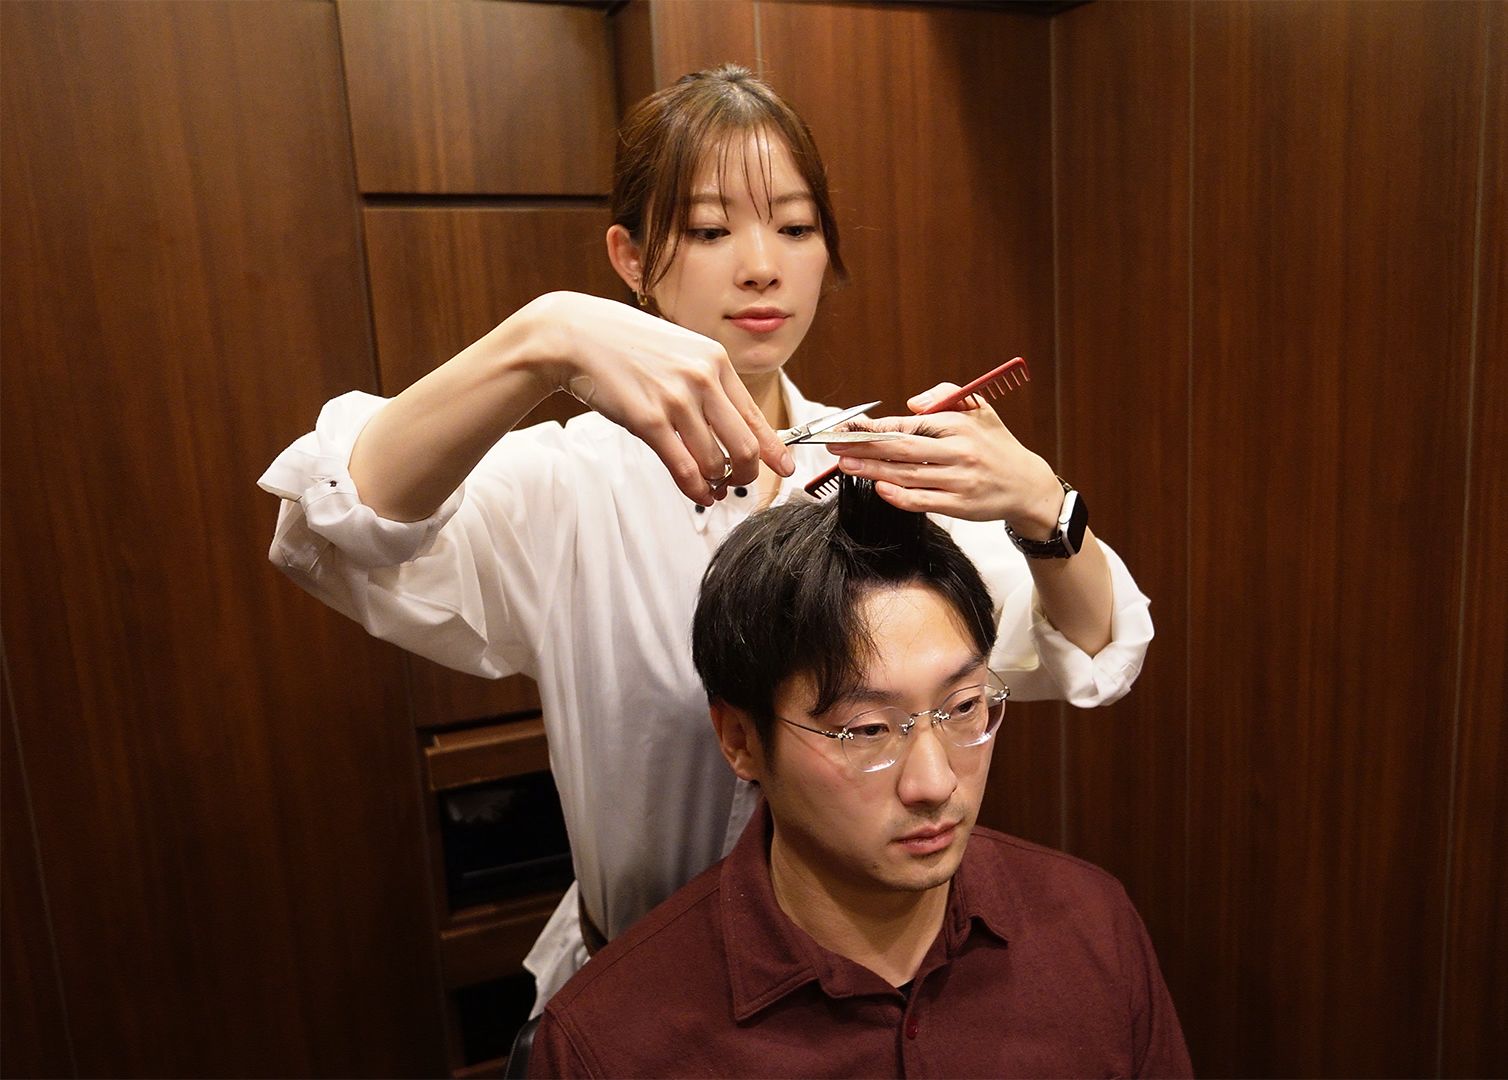 东京高级男士美容店带来的剪发剃须和非常享受的头，颈，肩部淋巴按摩服务（美容师是土屋花）【日本VLog】